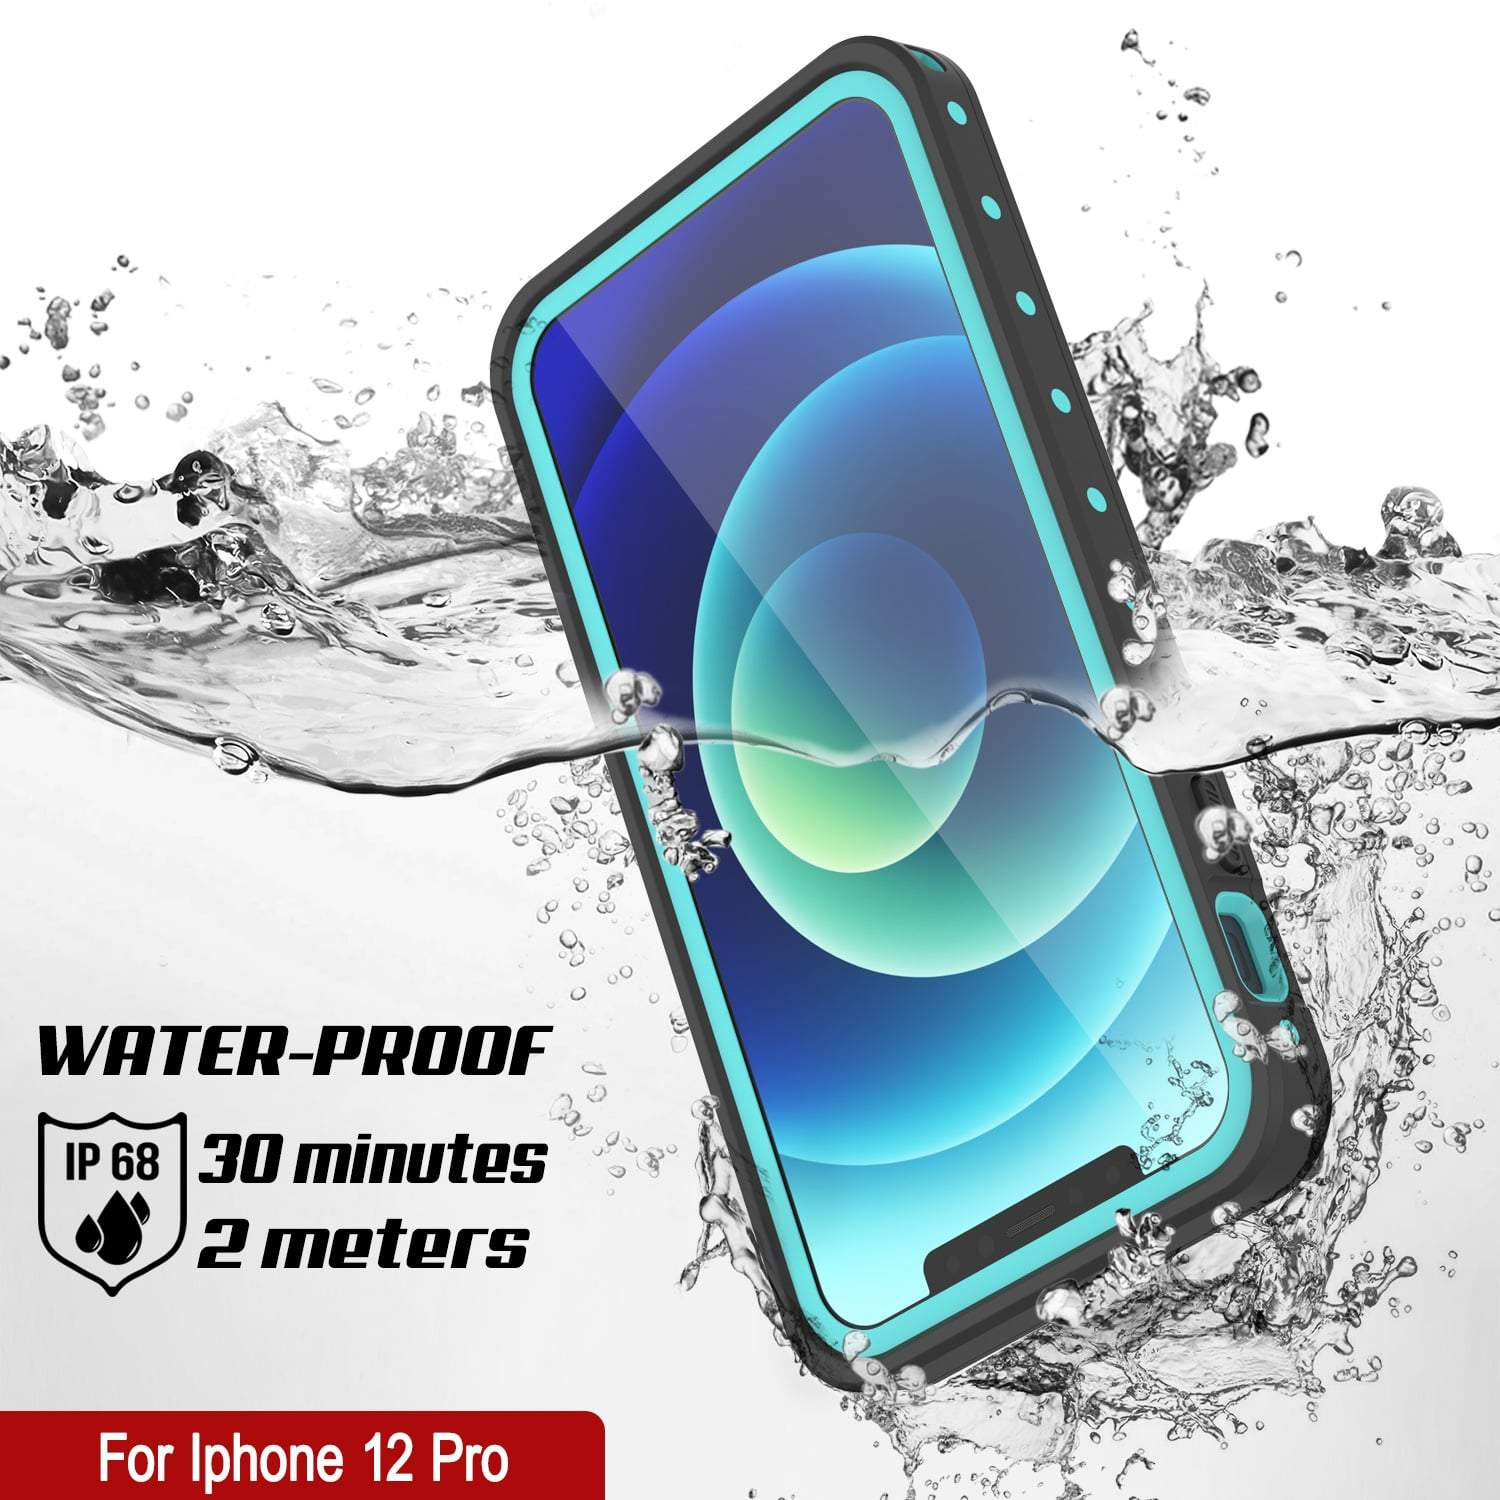 iPhone 12 Pro Waterproof IP68 Case, Punkcase [Teal] [StudStar Series] [Slim Fit]